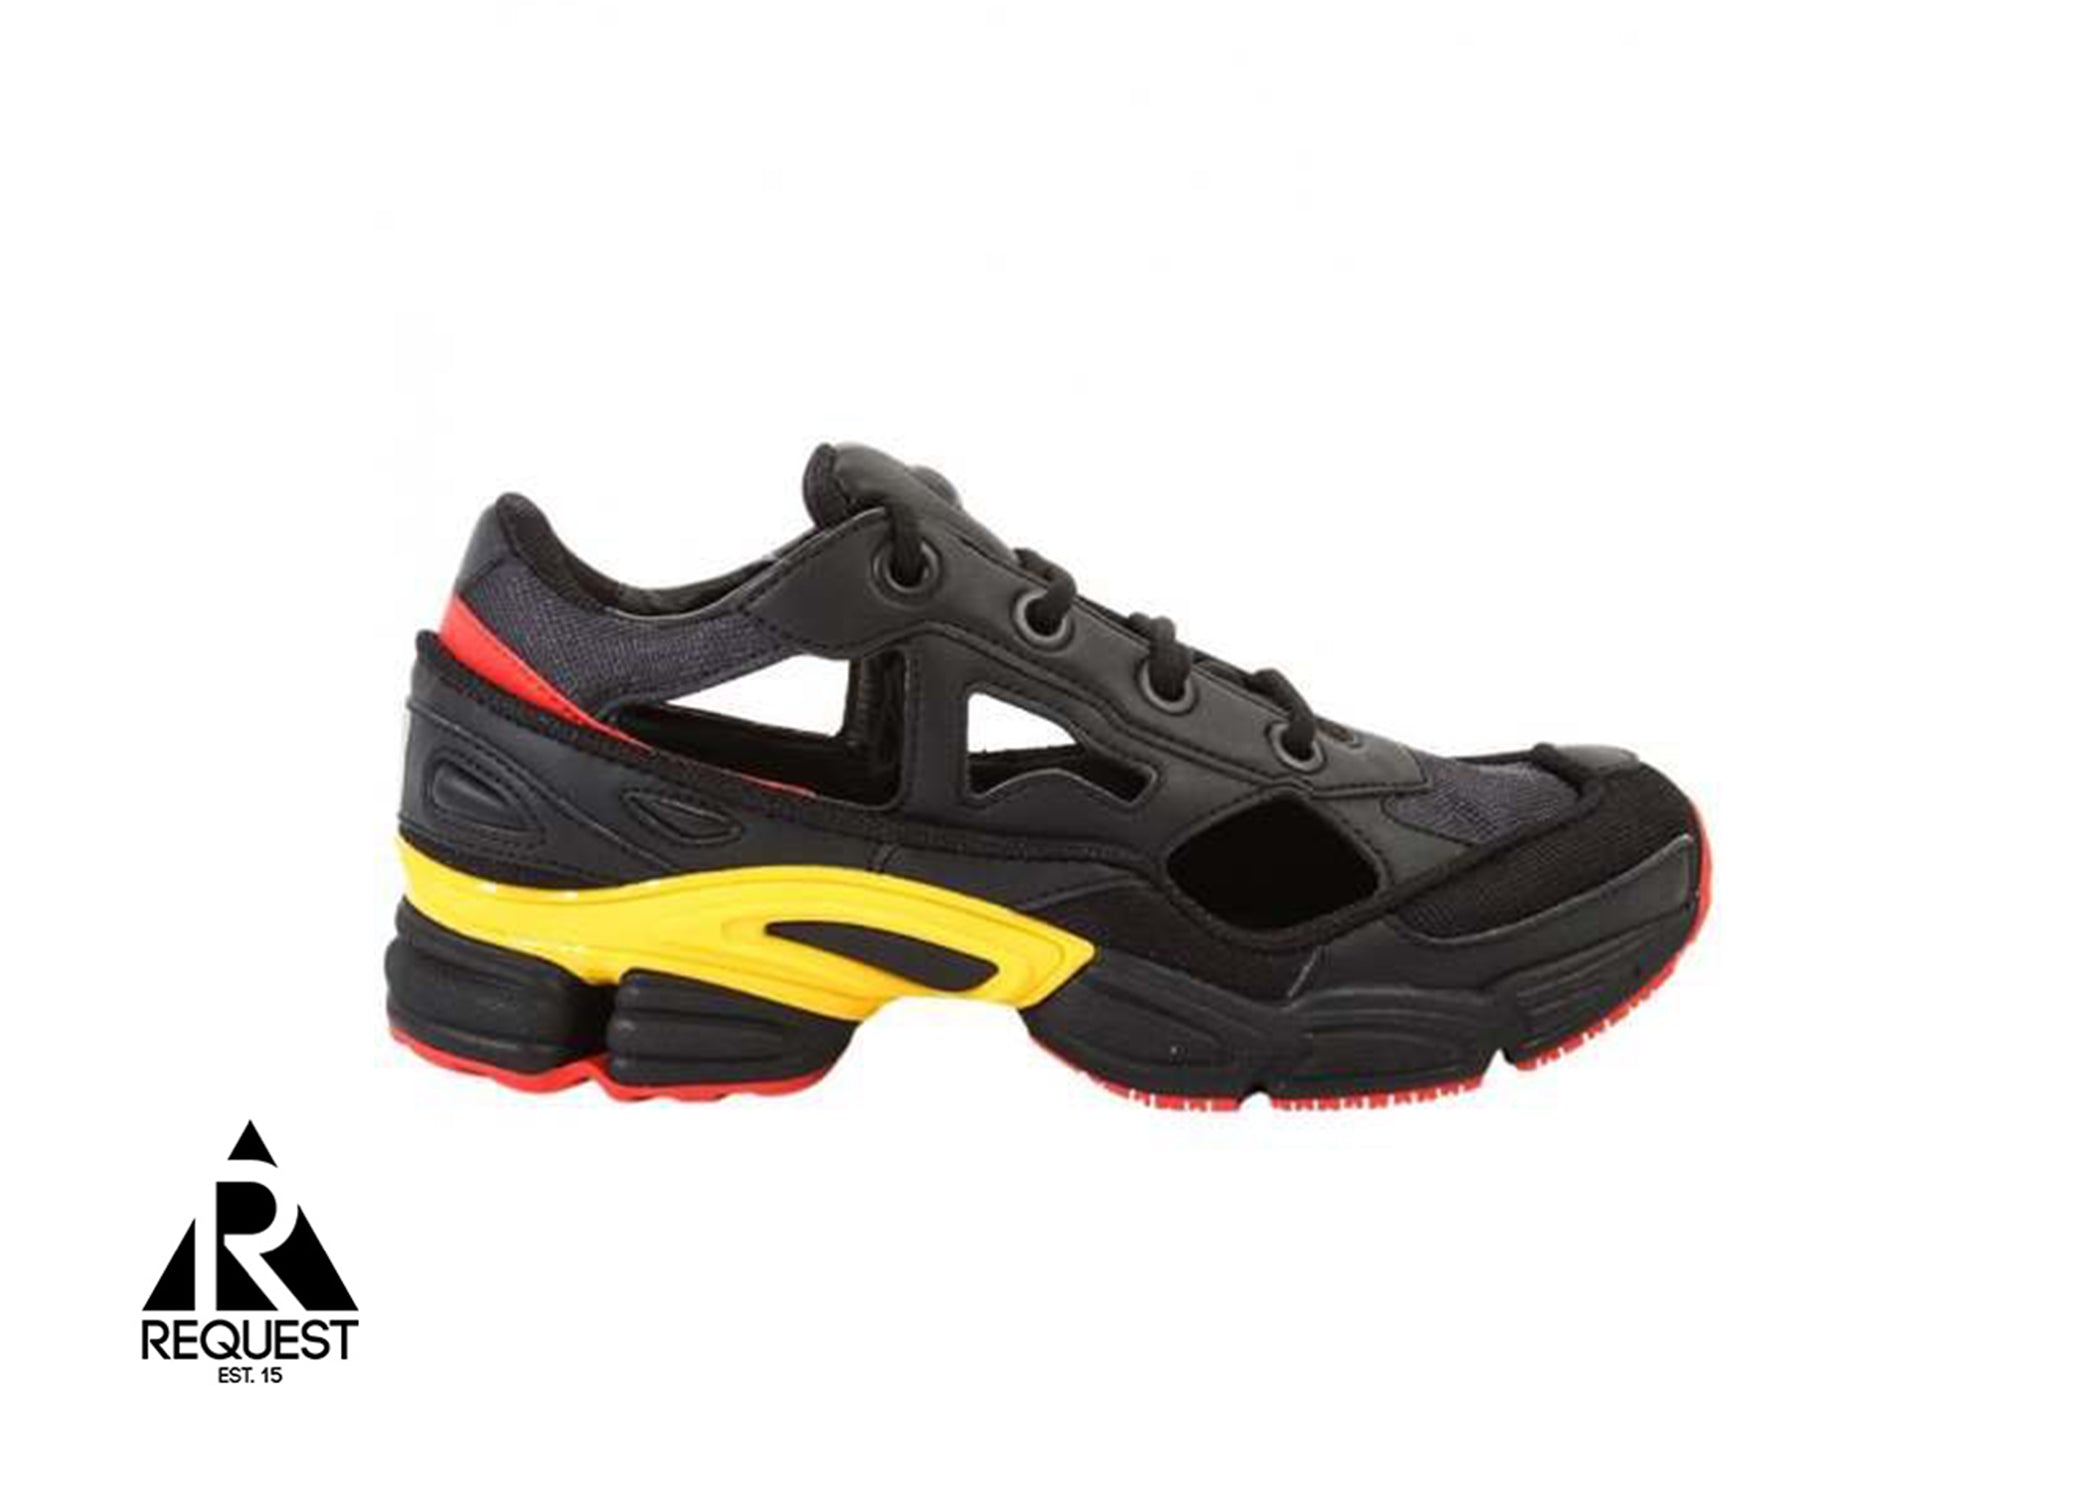 Adidas Raf Simons “Black & Yellow”